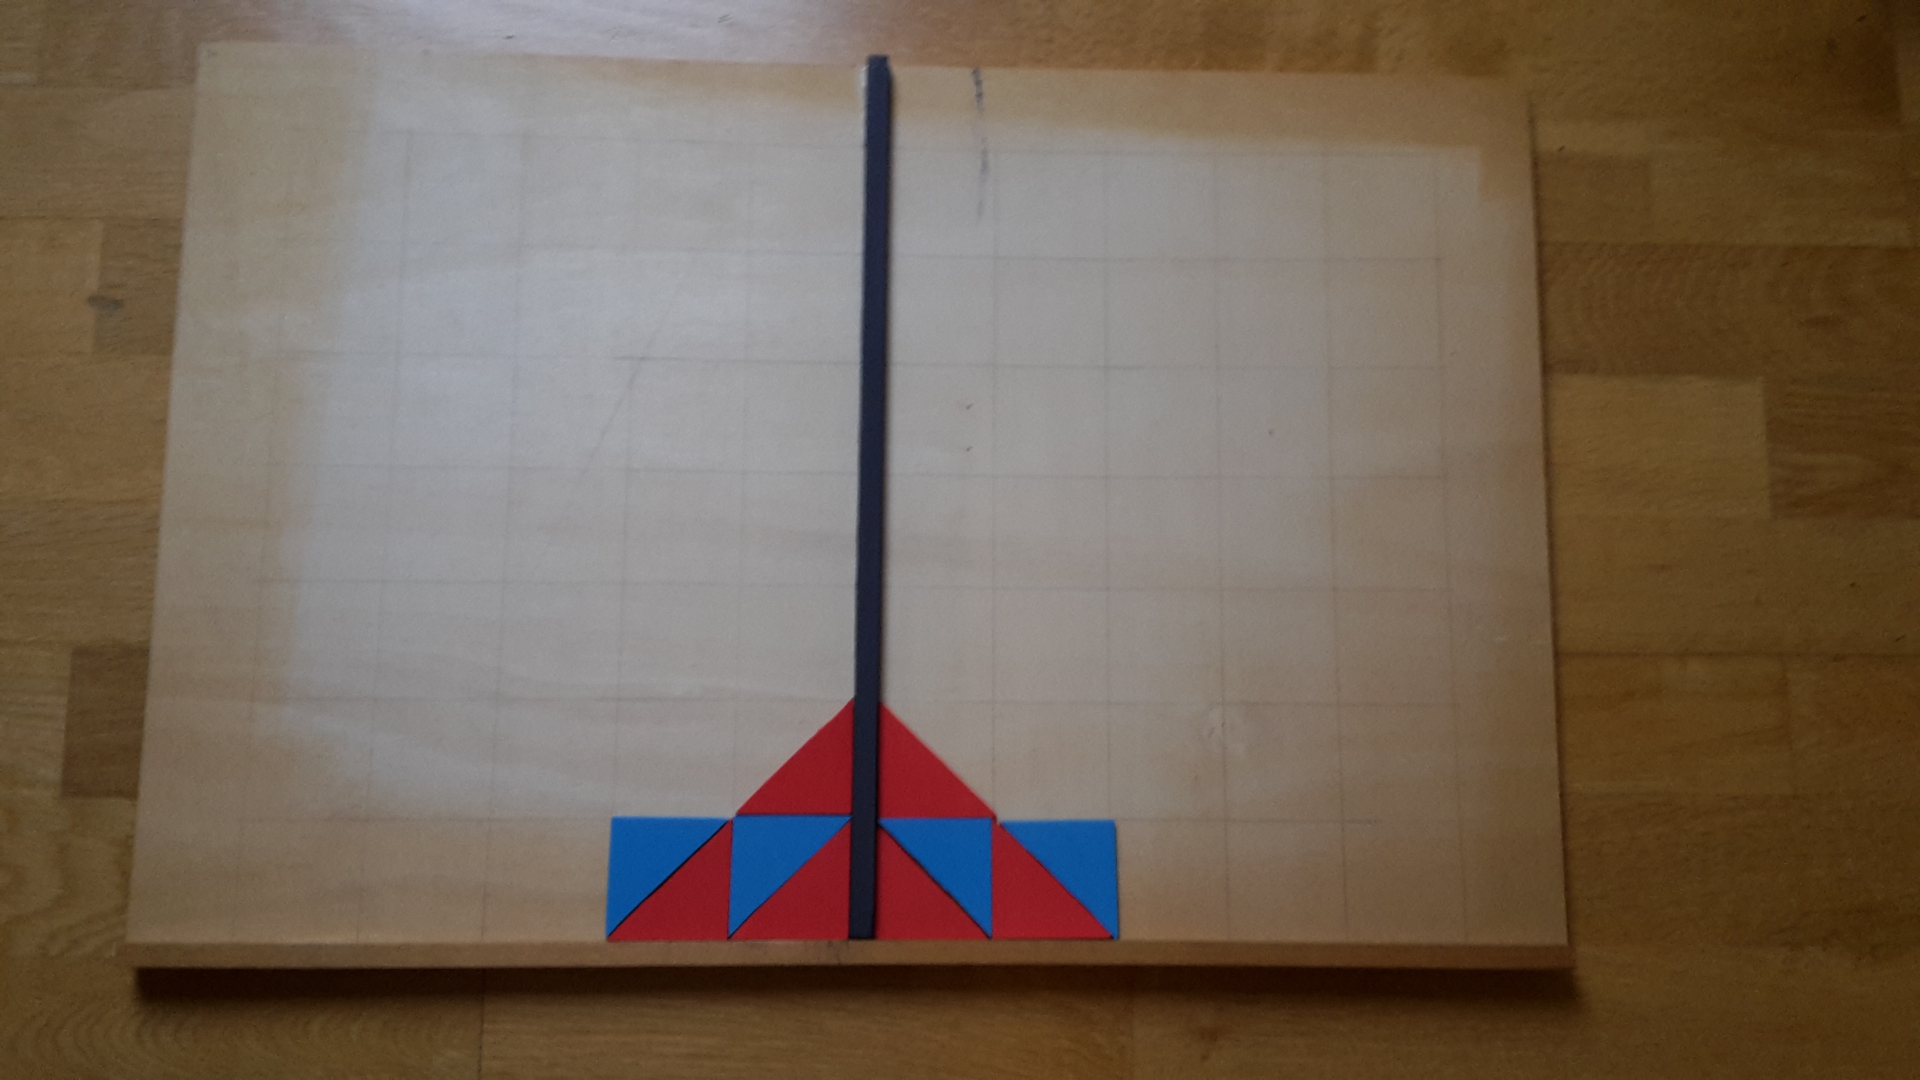 Unterlage mit Kästchenstruktur mit Spiegelachse in der Mitte. Links neben der Spiegelachse liegt ein Muster aus roten und blauen Dreiecken. Rechts neben der Spiegelachse ist es achsensymmetrisch abgebildet. Das rote Dreieck aus Abbildung 4 ist in dem Muster enthalten.